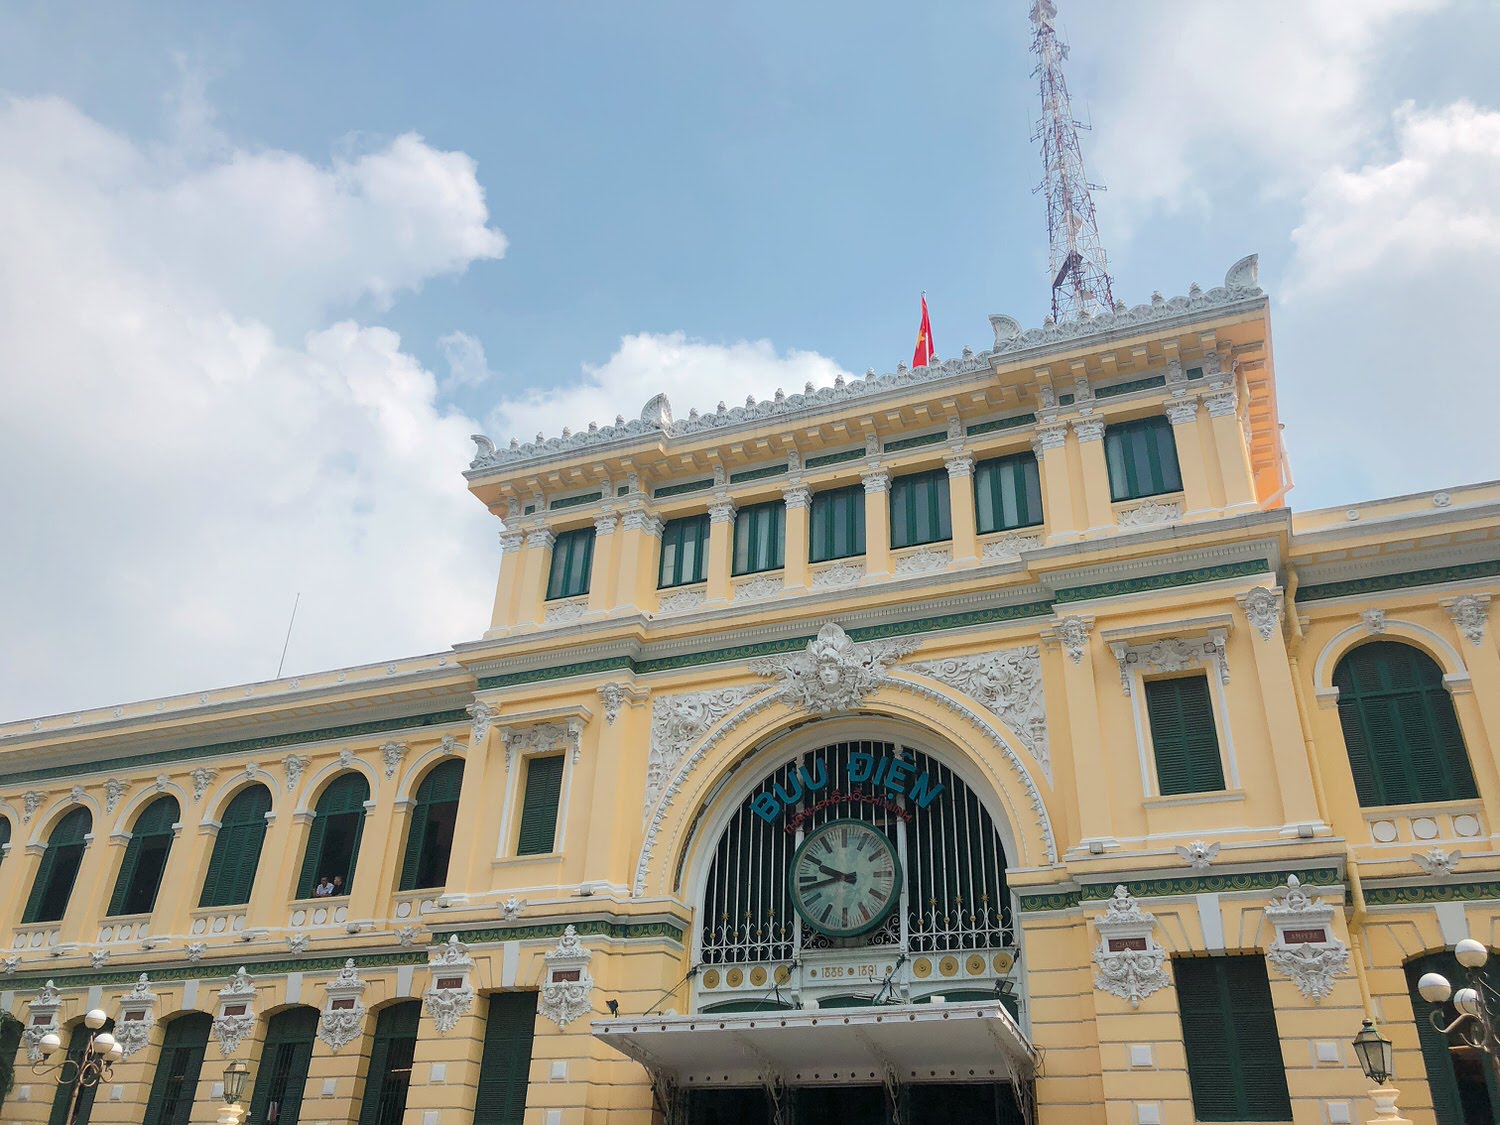 Vietnam 胡志明市自由行 
Bưu điện trung tâm Sài Gòn 中央郵局